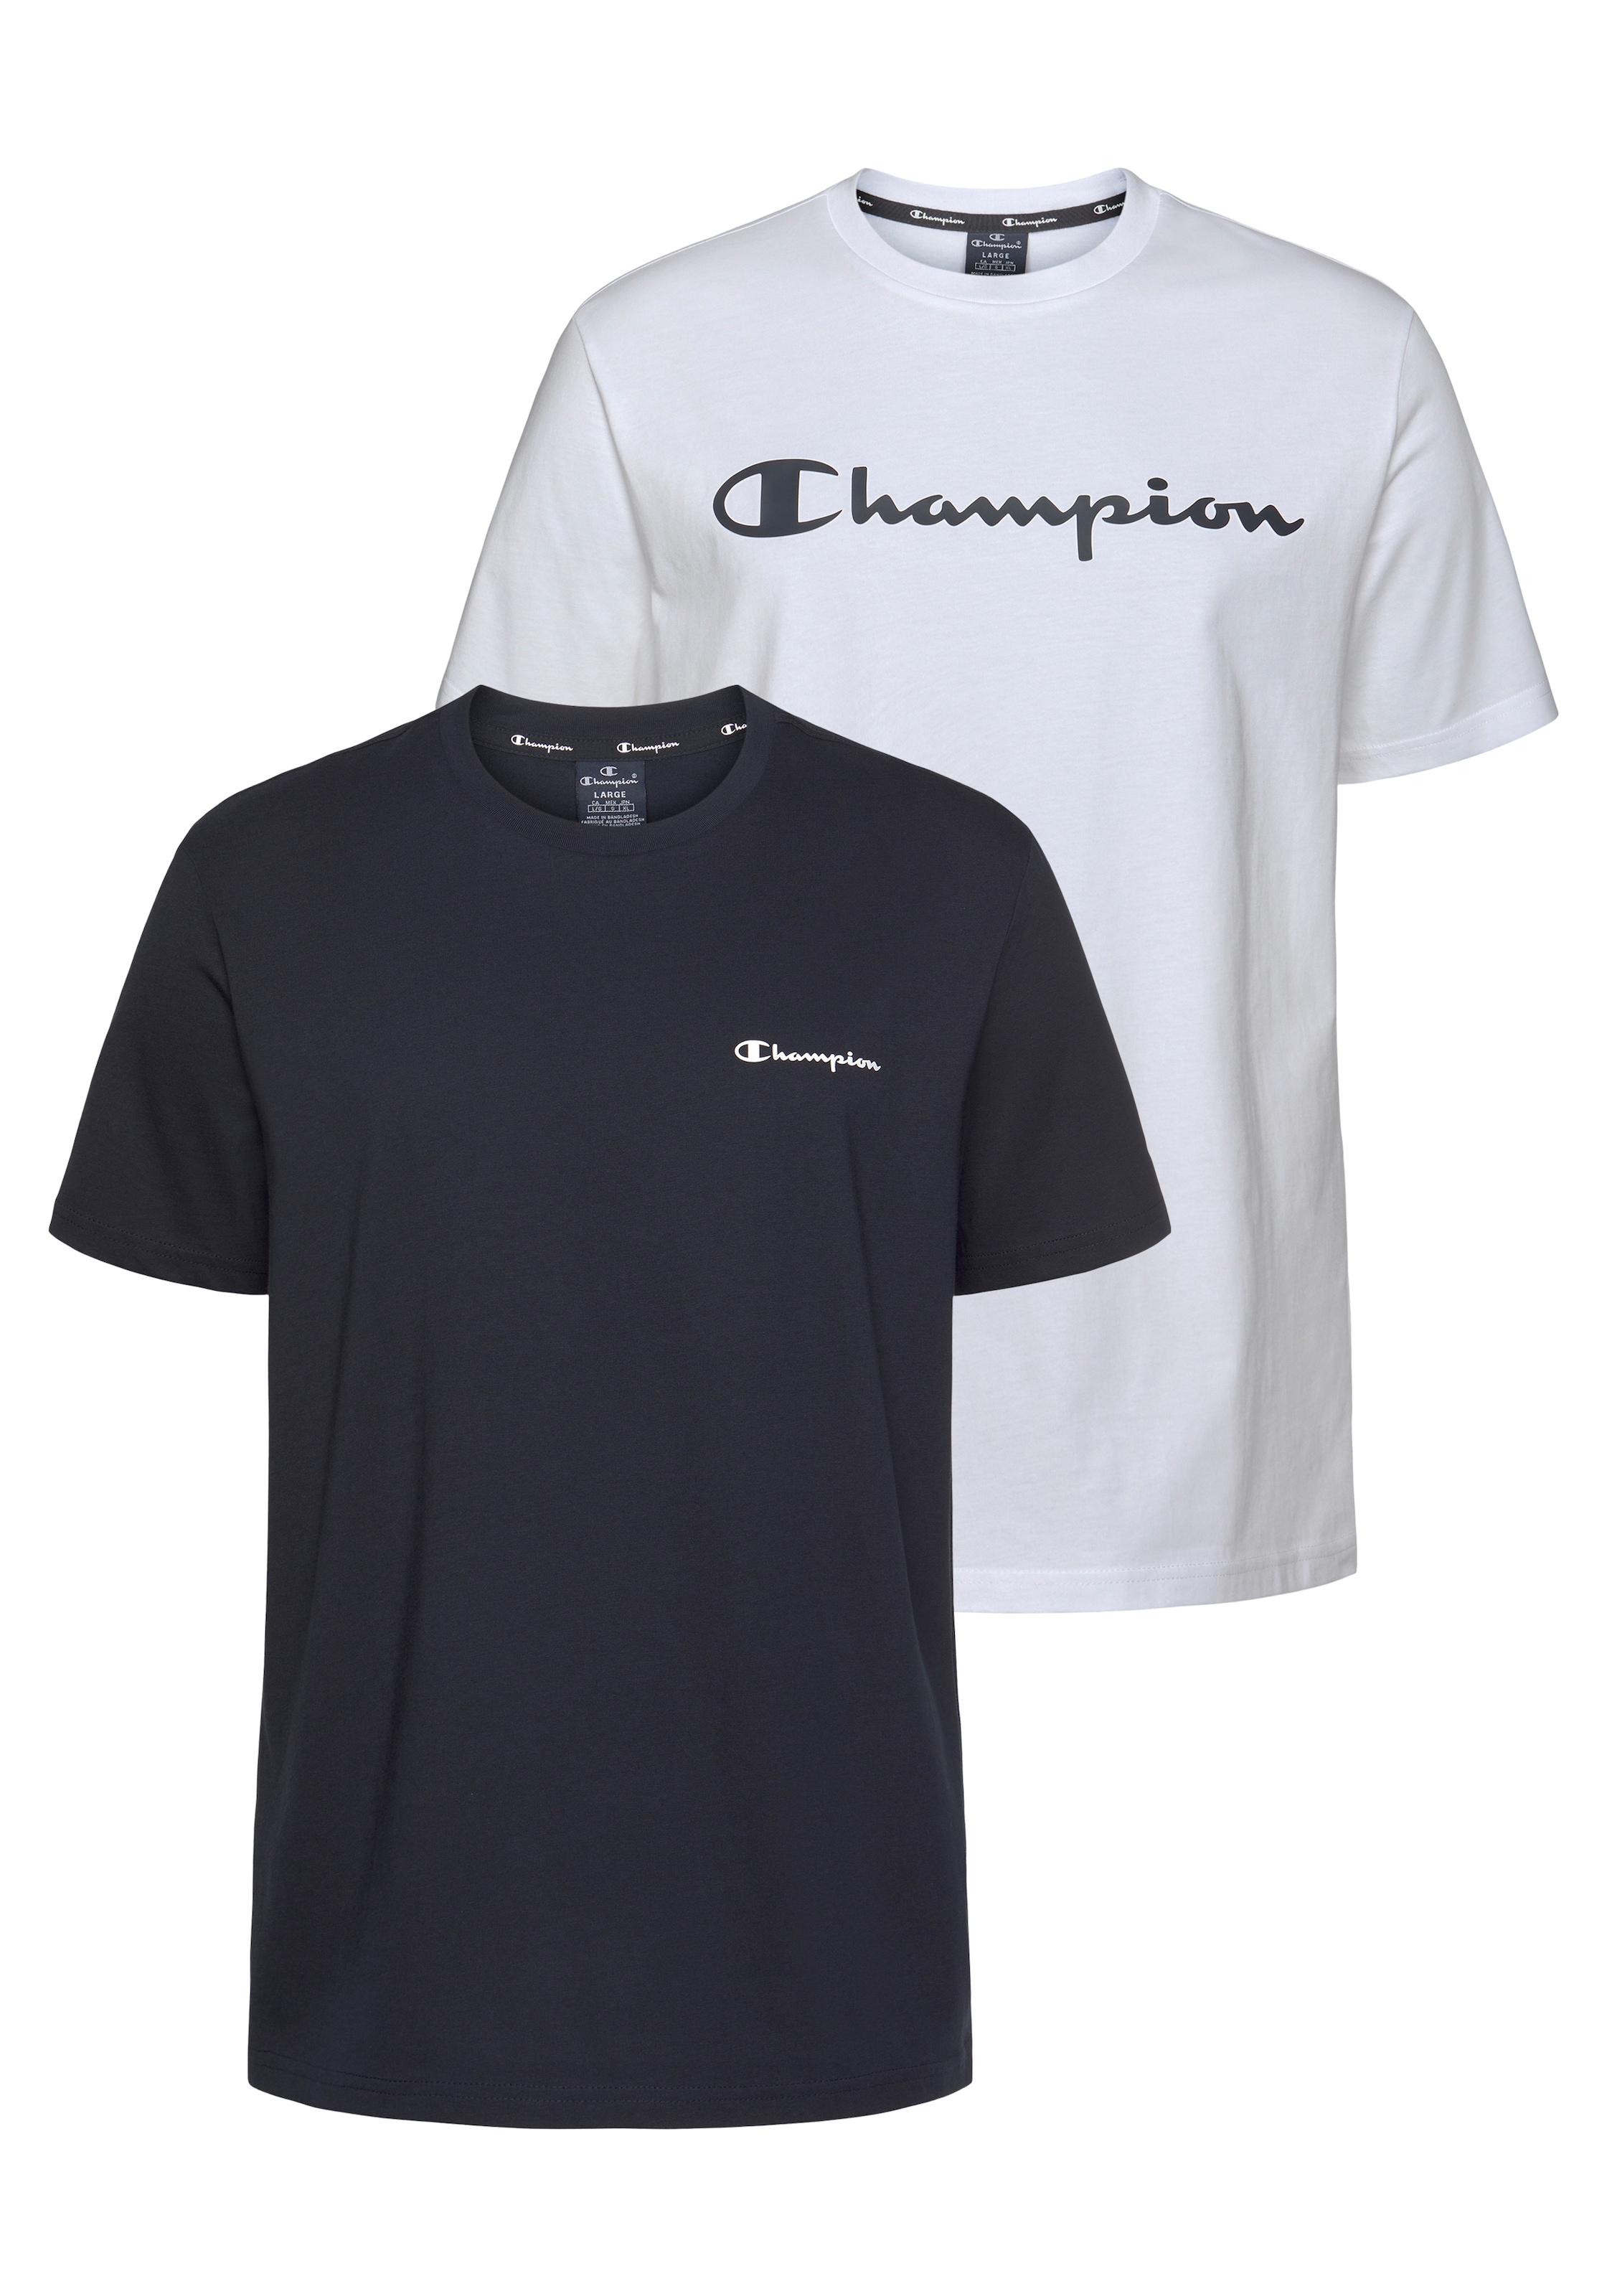 Rabatt 52 % DAMEN Hemden & T-Shirts T-Shirt Basisch Rosa L Champion T-Shirt 